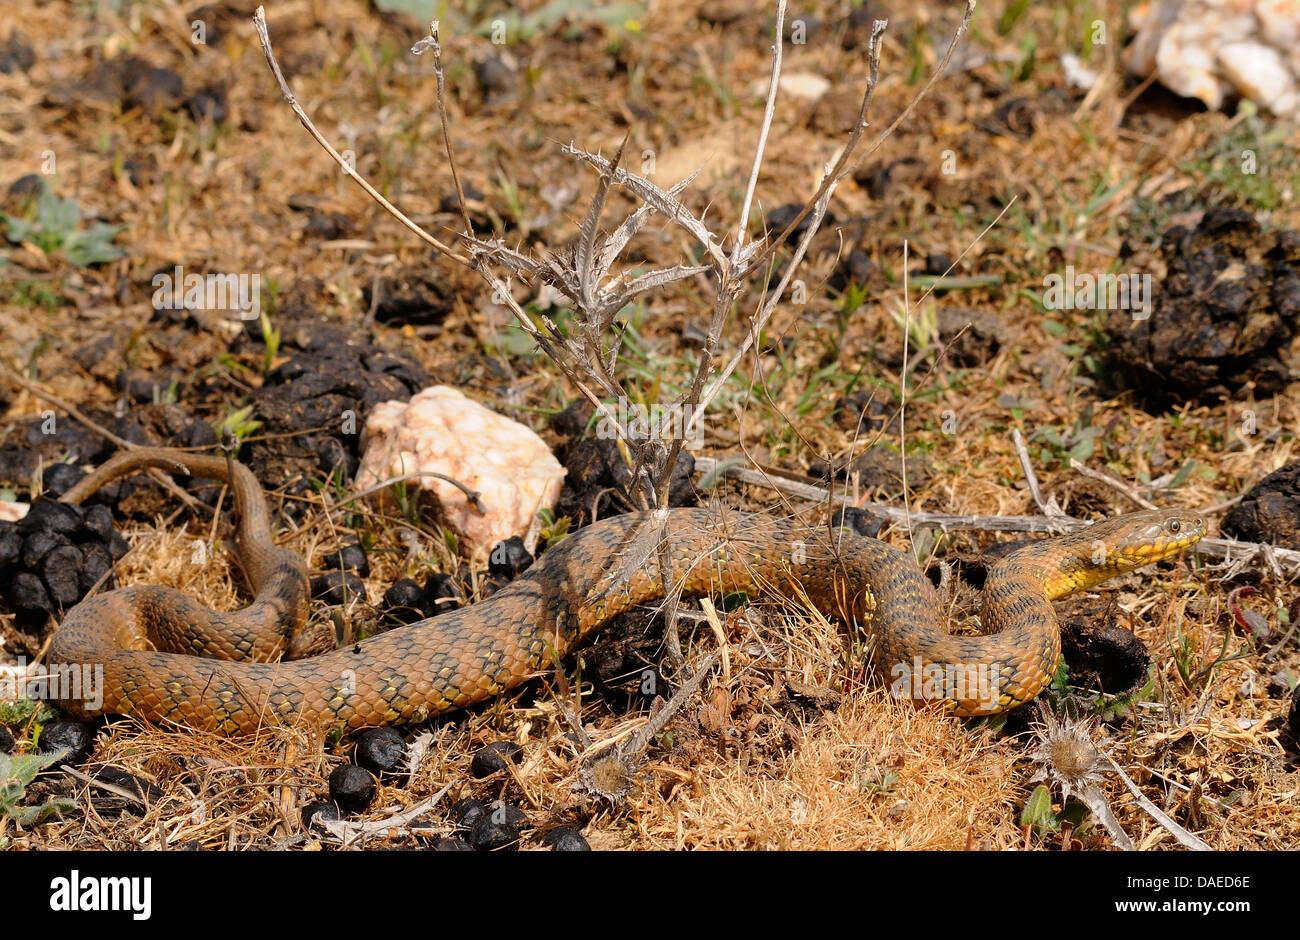 Viperine snake, viperine biscia dal collare (natrix maura), strisciando sul terreno, Spagna Estremadura Foto Stock